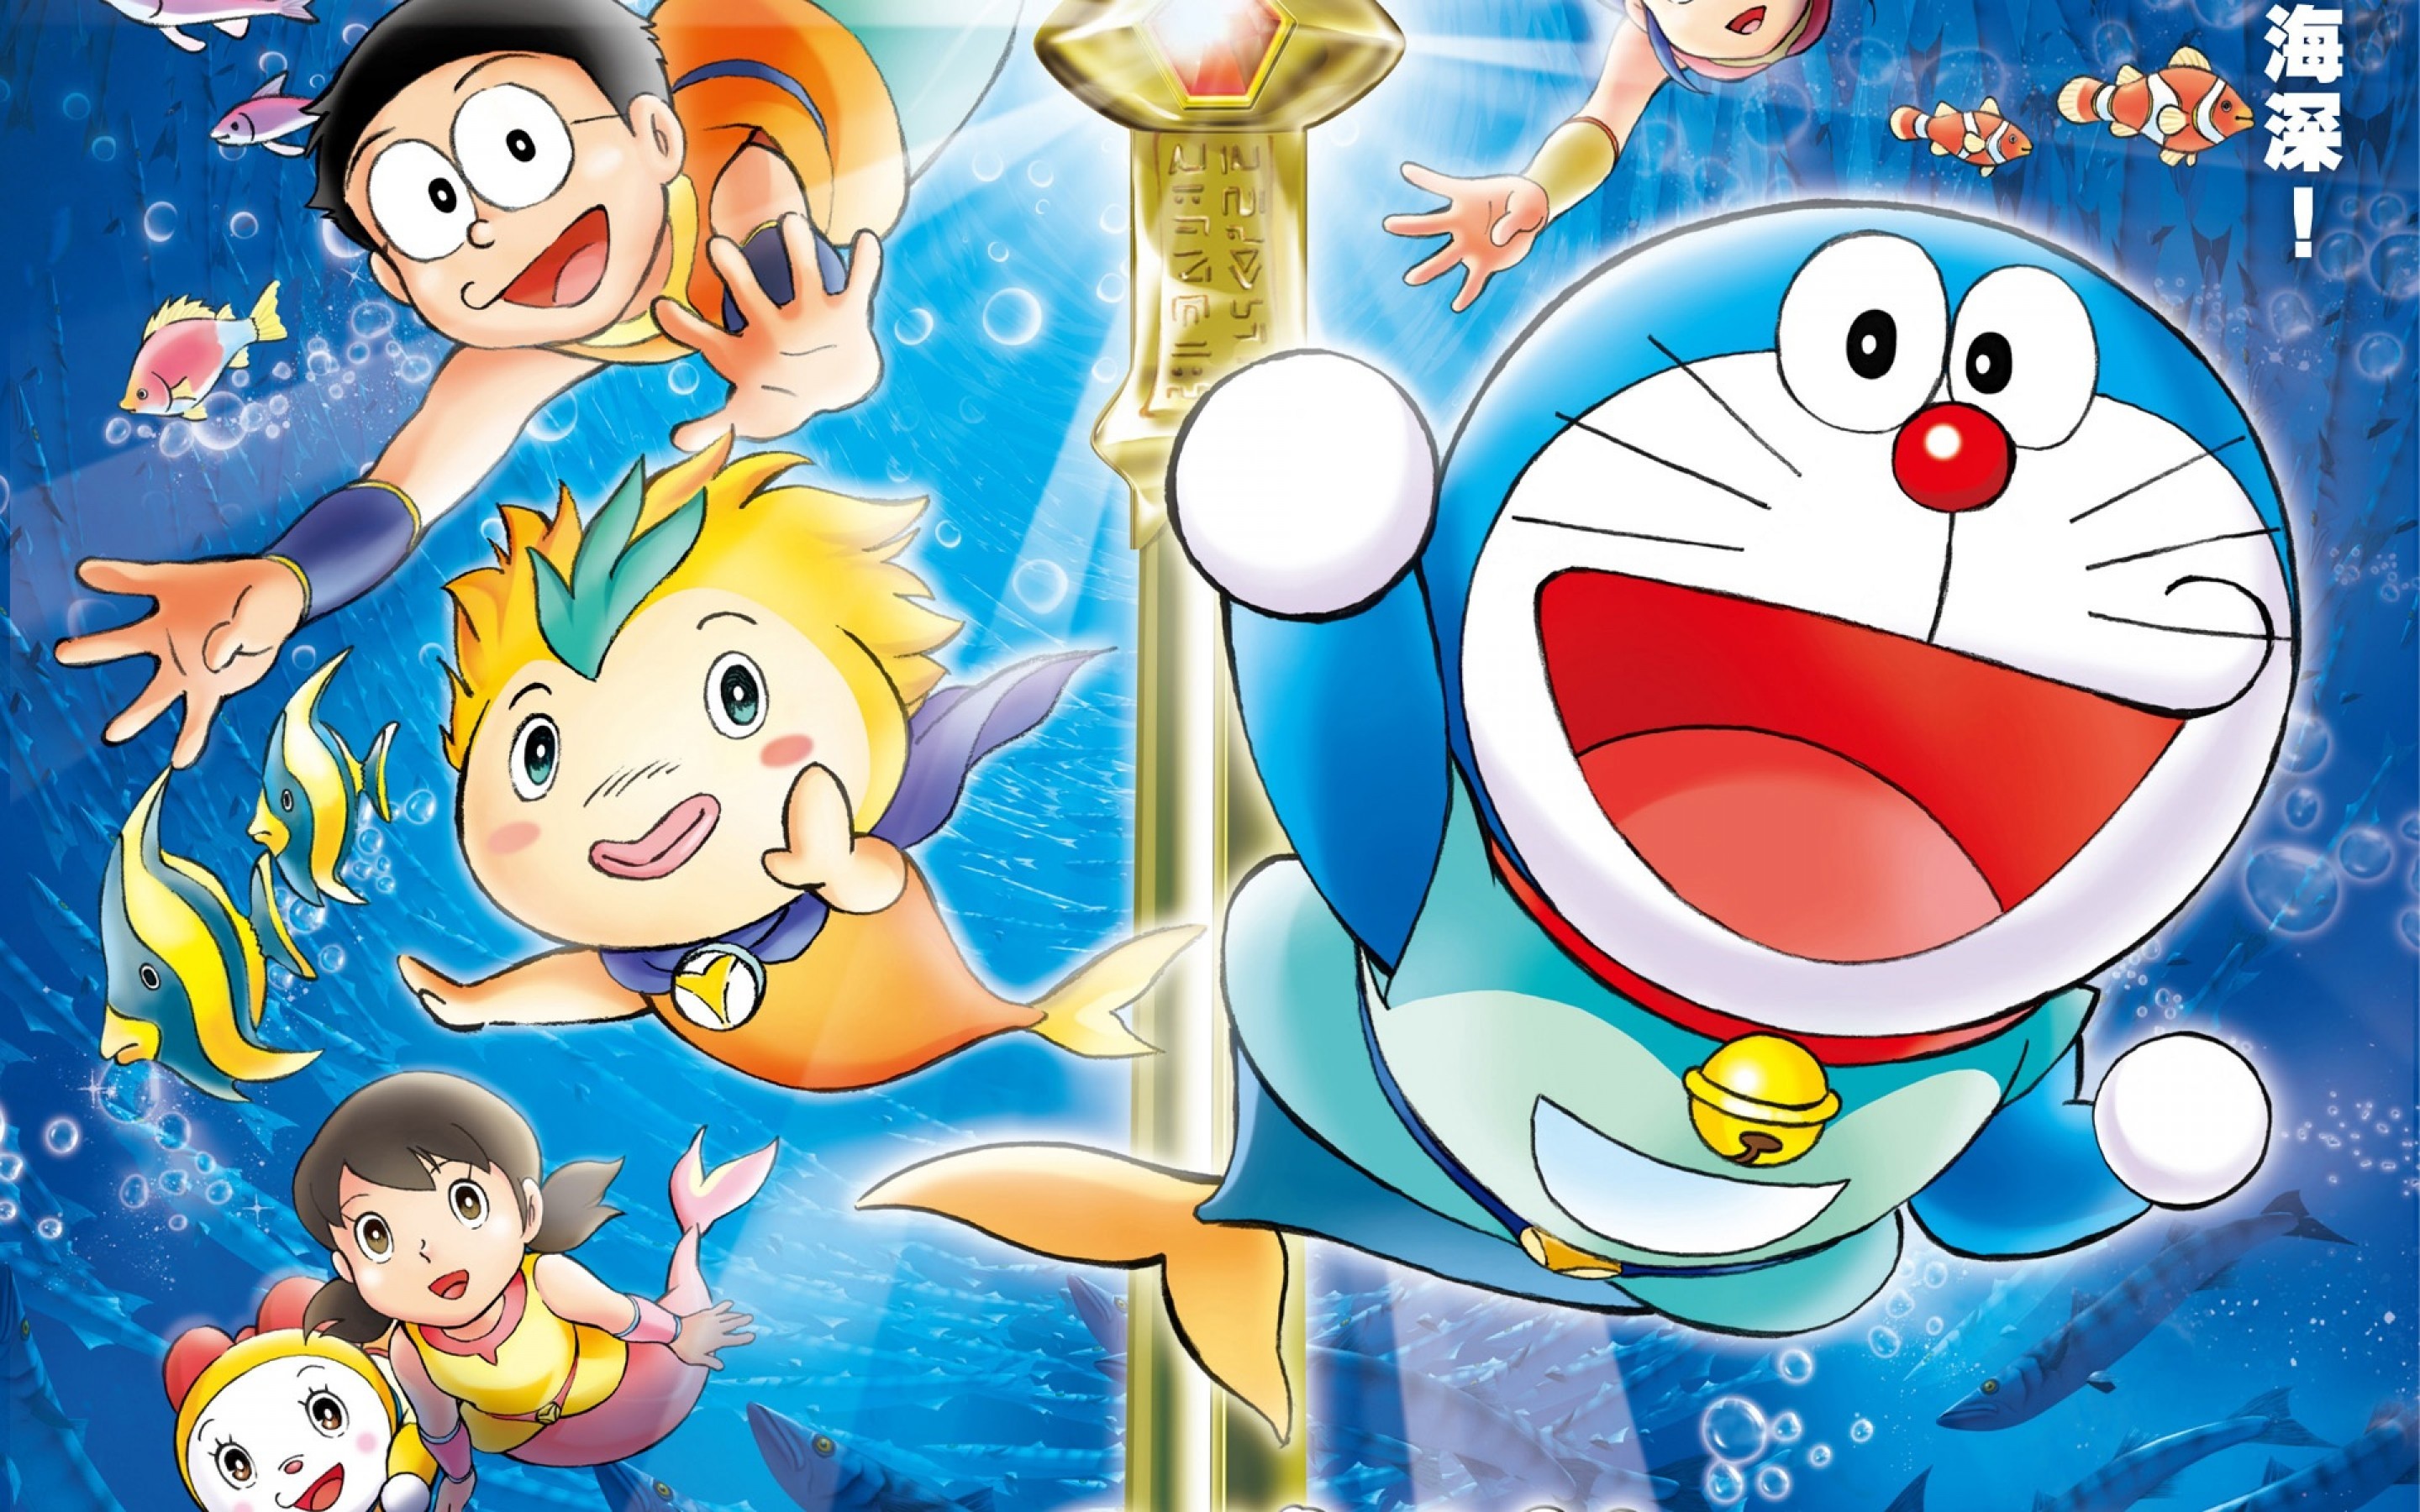 Năm 2018, Doraemon và những người bạn của mình vẫn làm say đắm biết bao trái tim khán giả trẻ. Tại trang web chia sẻ ảnh lớn như Pinterest và Tumblr, bạn sẽ dễ dàng tìm thấy hàng chục bức hình không chỉ về Doraemon mà còn về những nhân vật phụ đáng yêu khác như Nobita, Shizuka và Xuka.